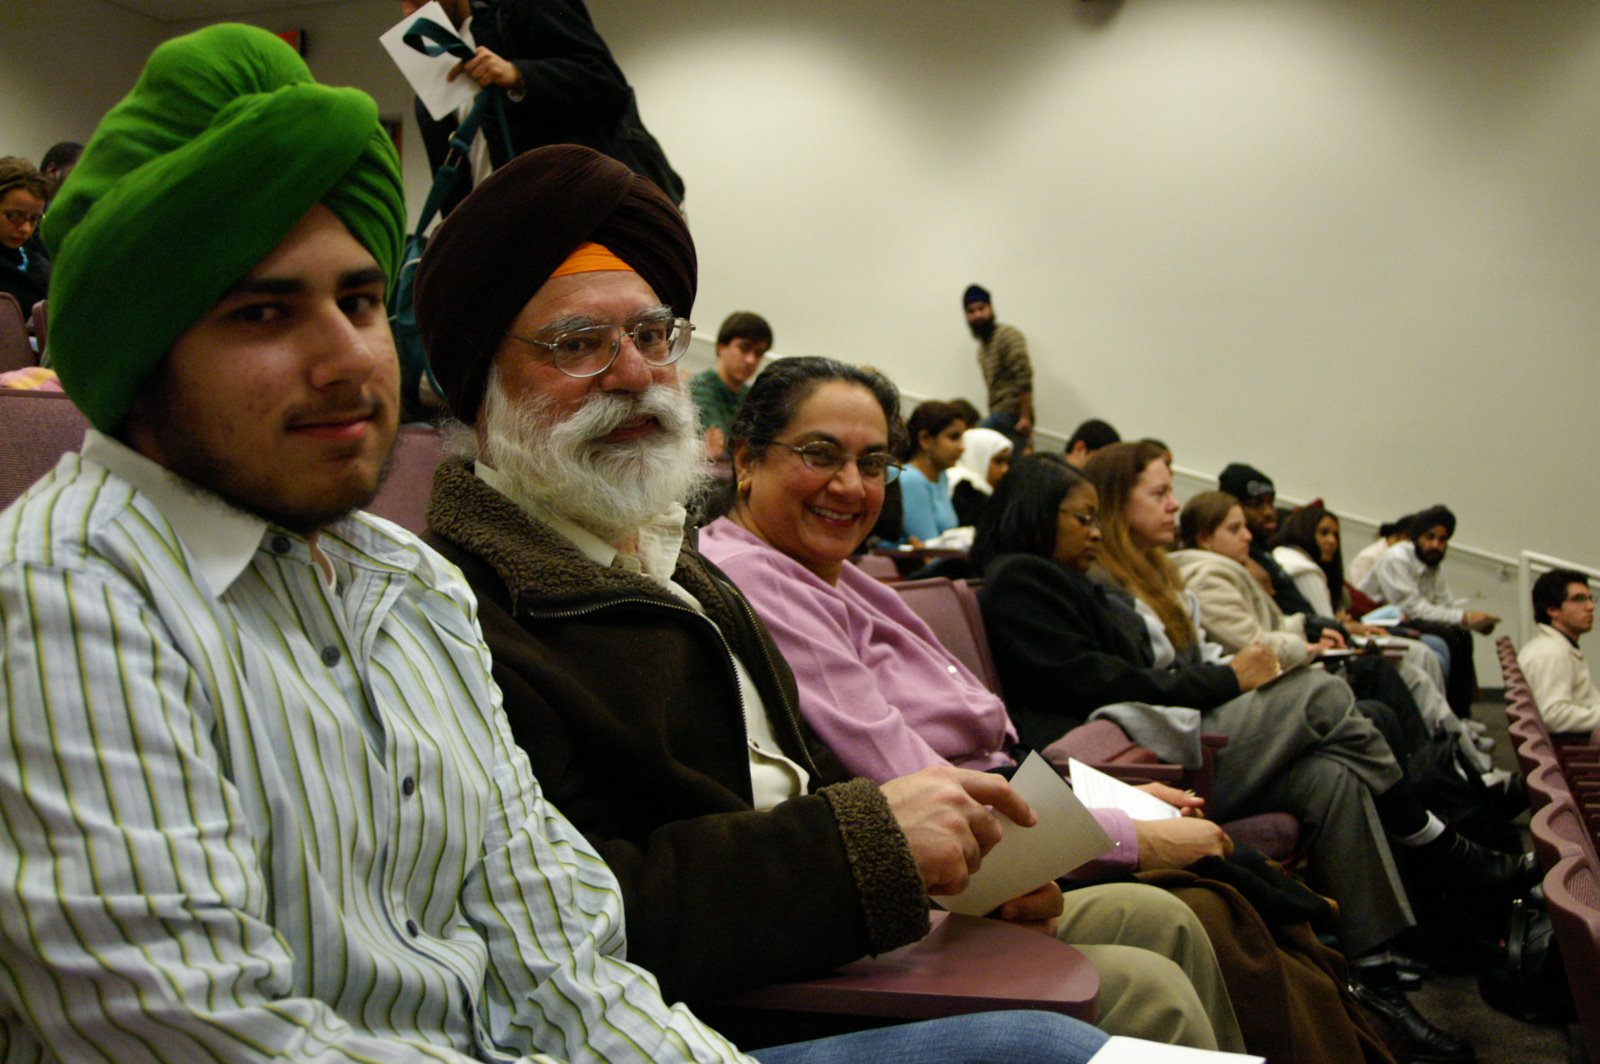 [Sikh+Family+in+Audience.JPG]